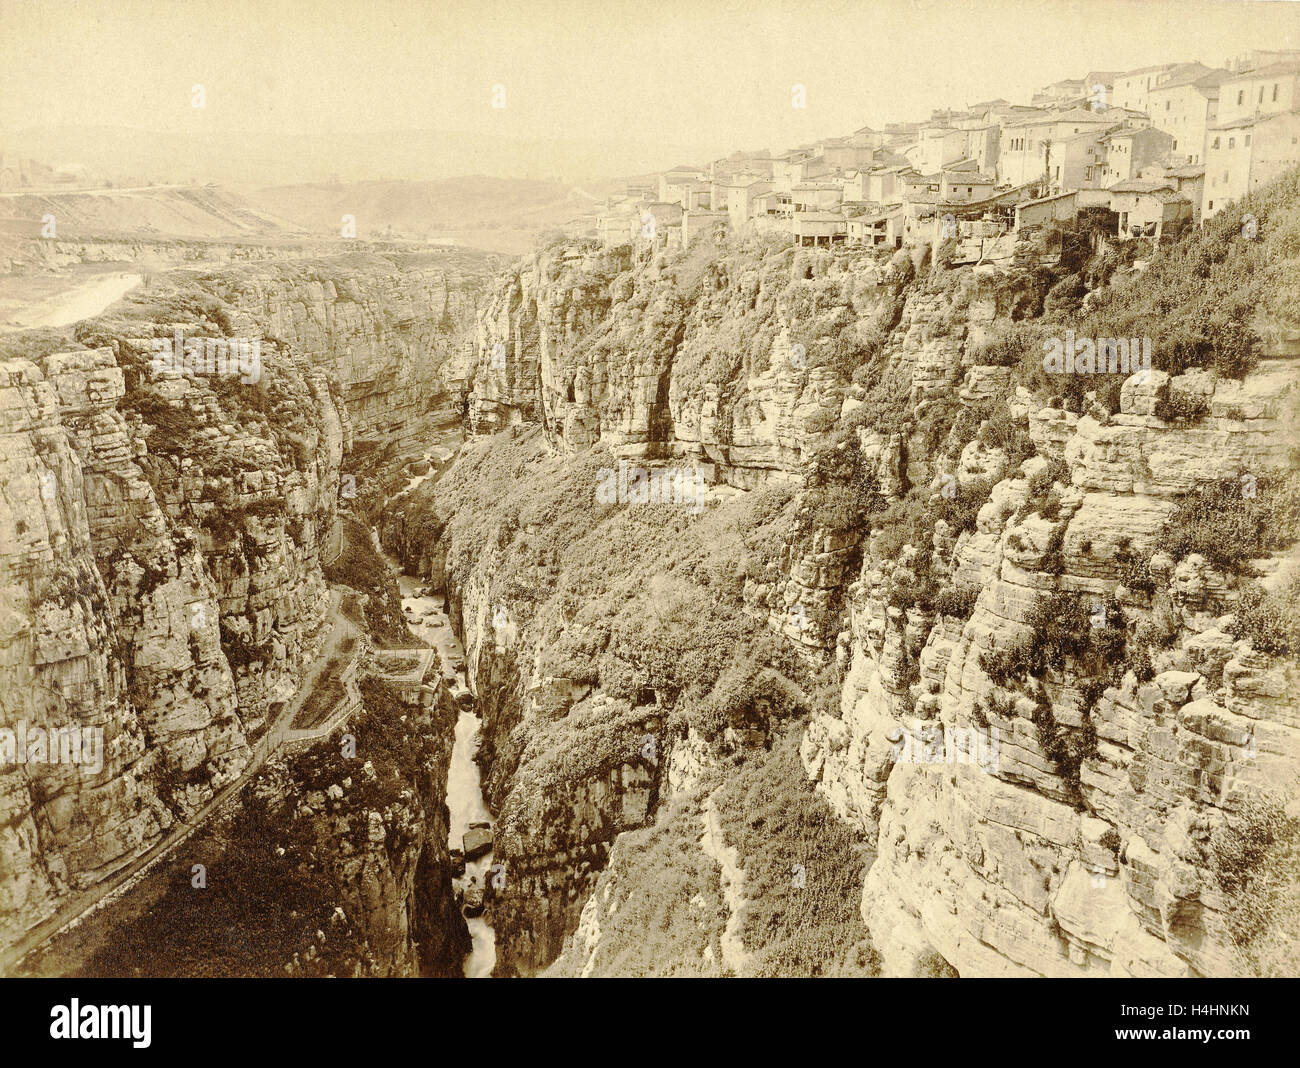 Gorge in Algeria, Étienne Neurdein, 1850 - 1920 Stock Photo